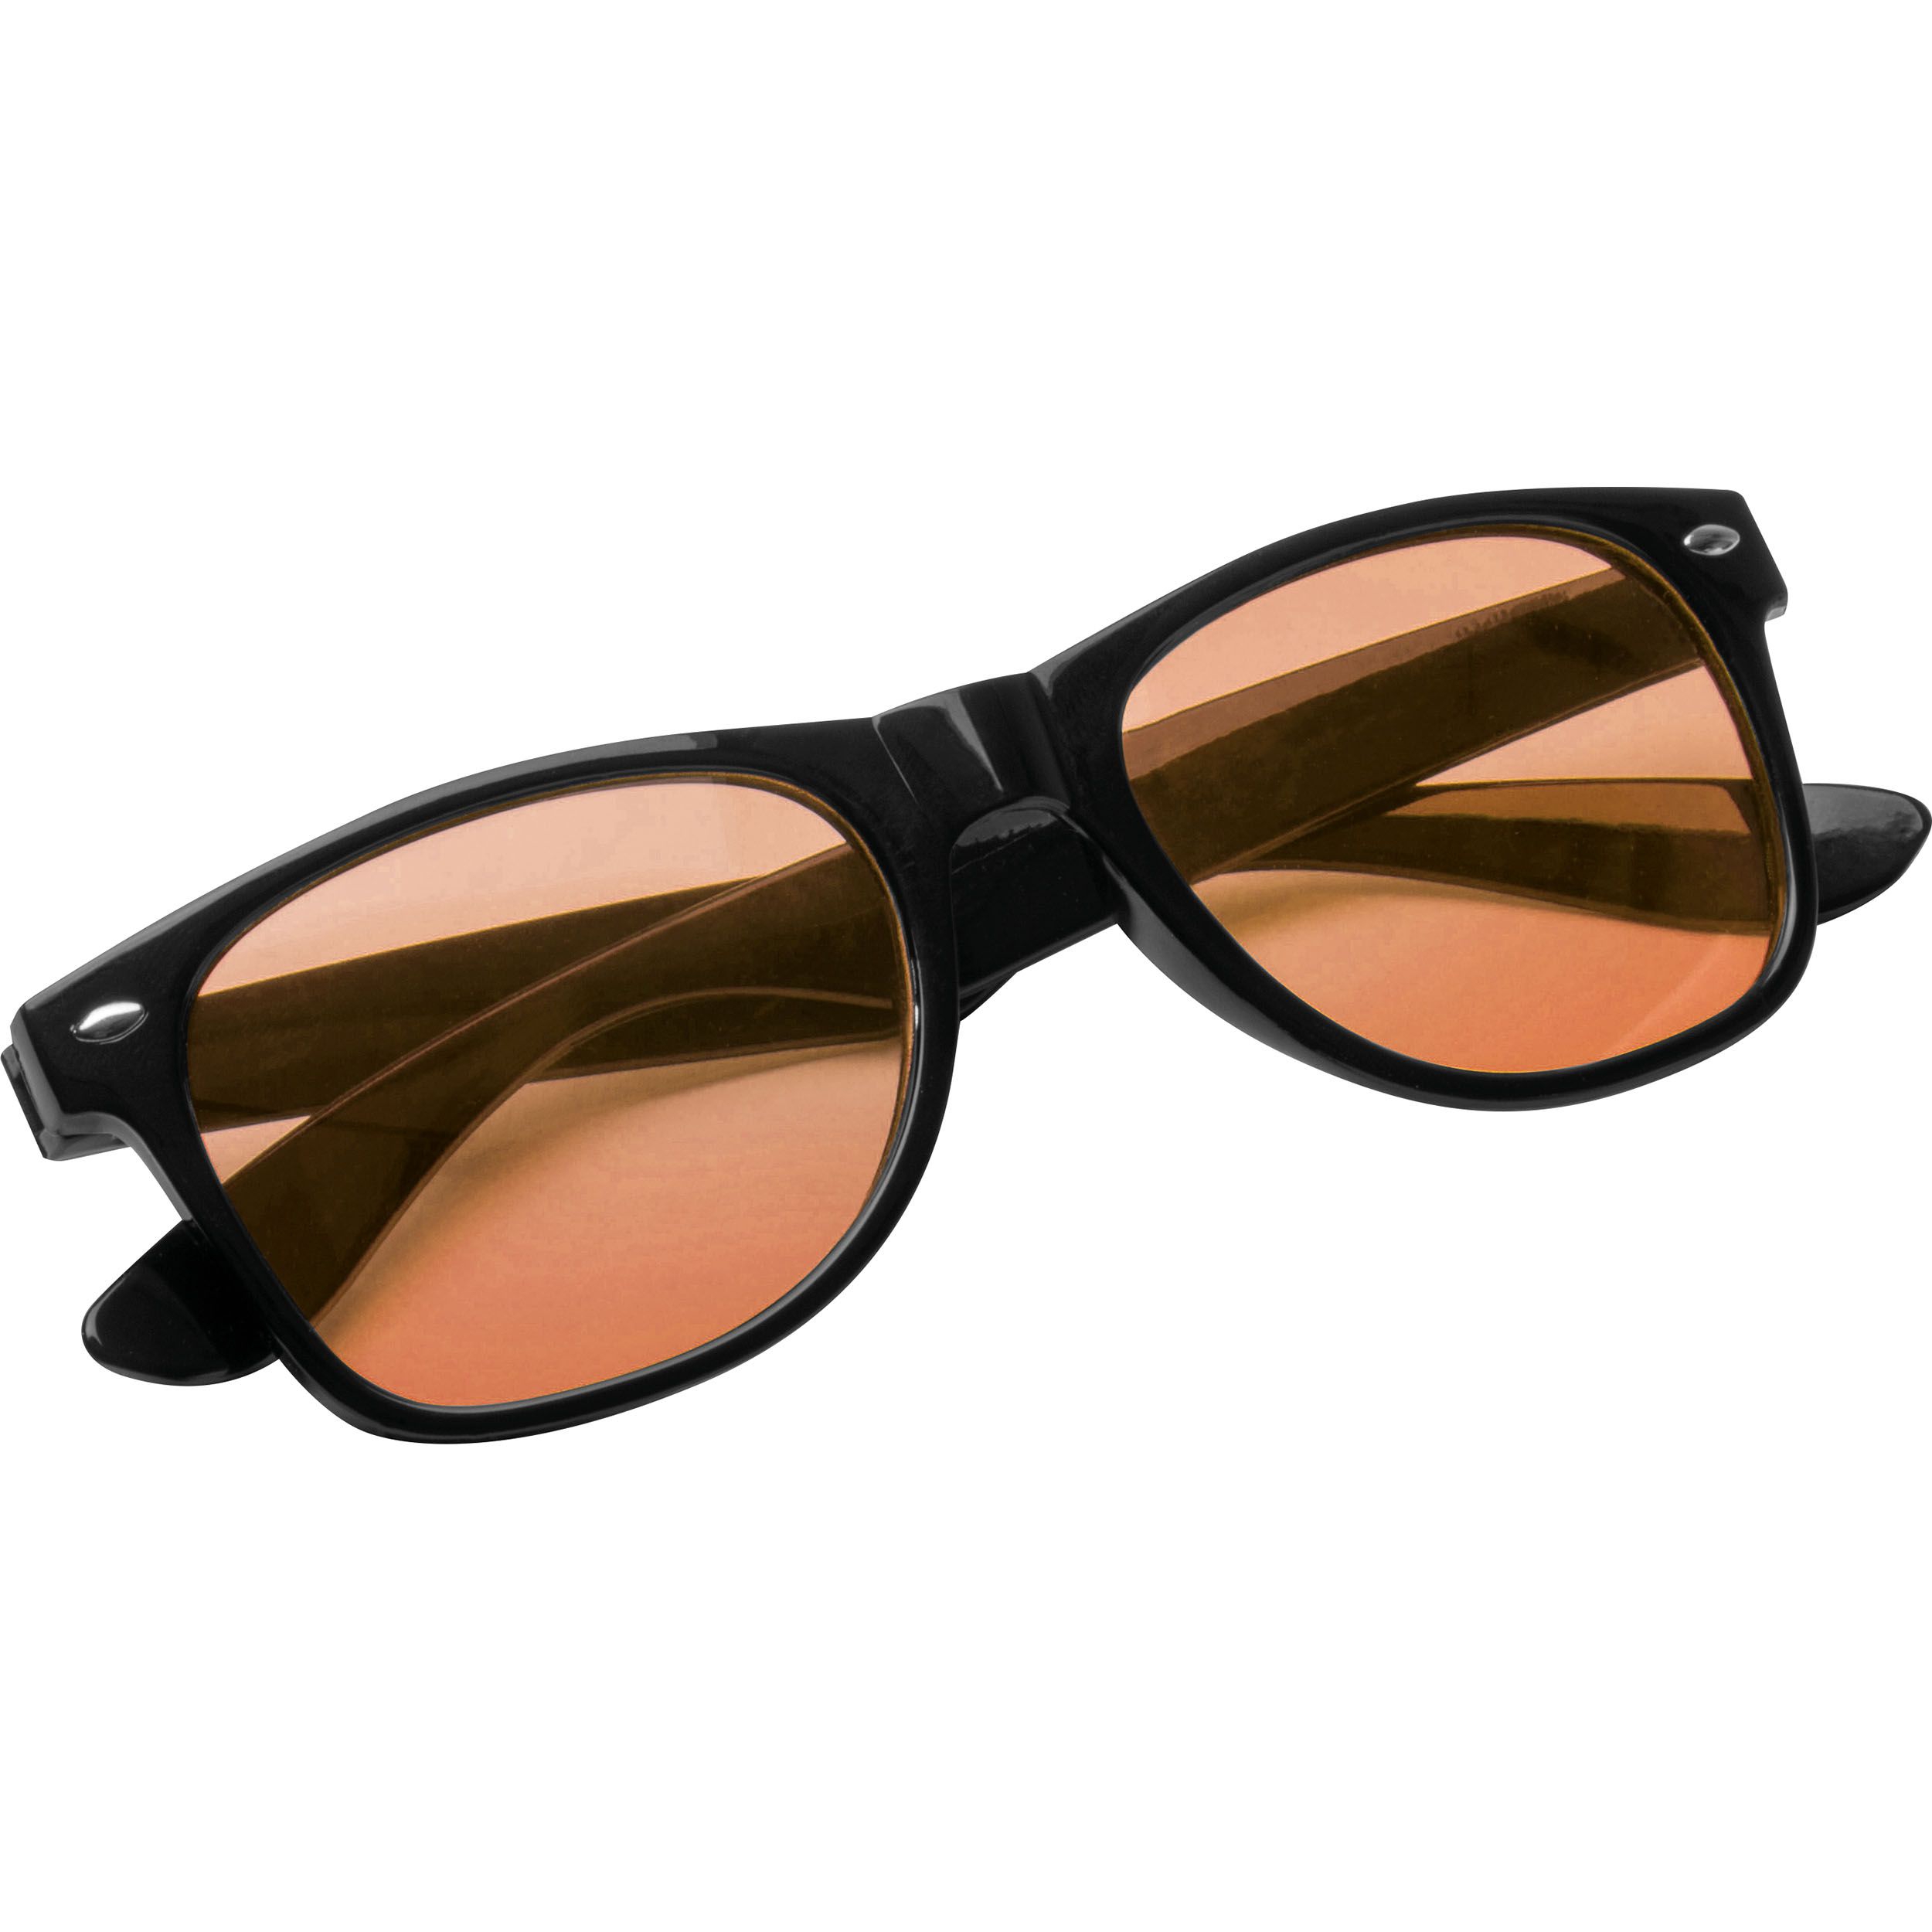 Sonnenbrille mit farbigen Gläsern, orange